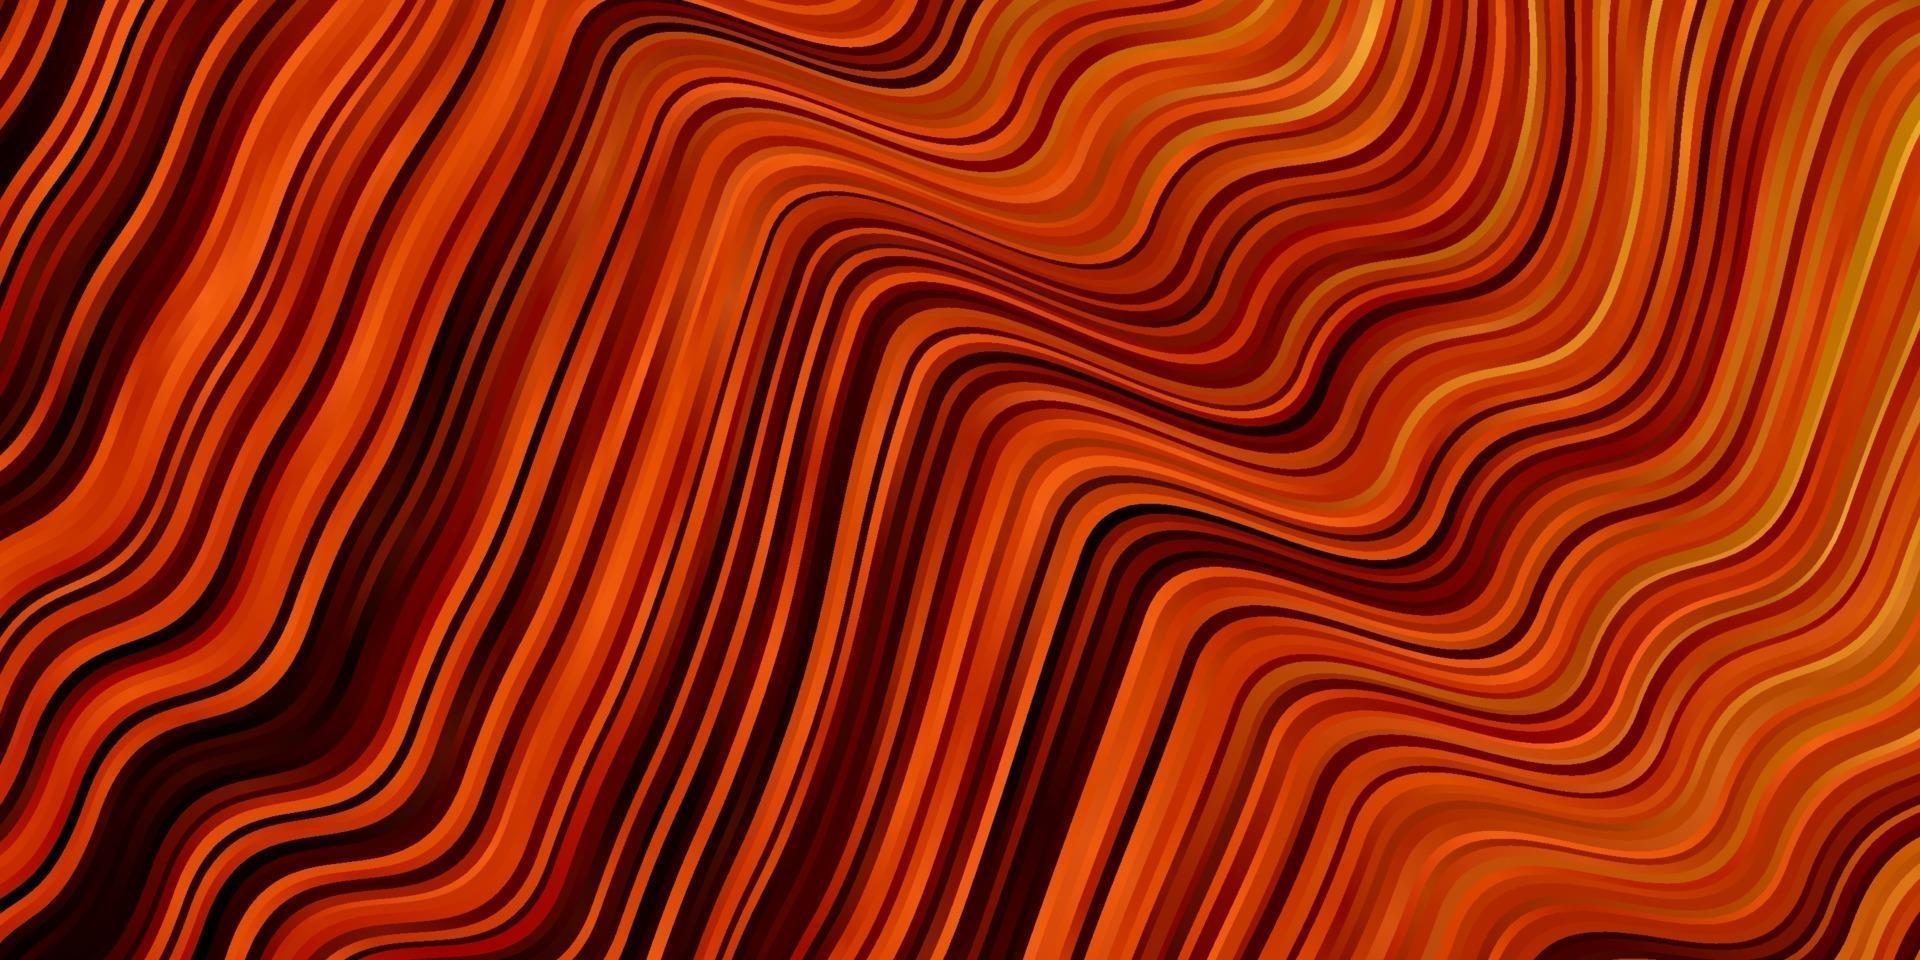 trama vettoriale arancione scuro con curve.